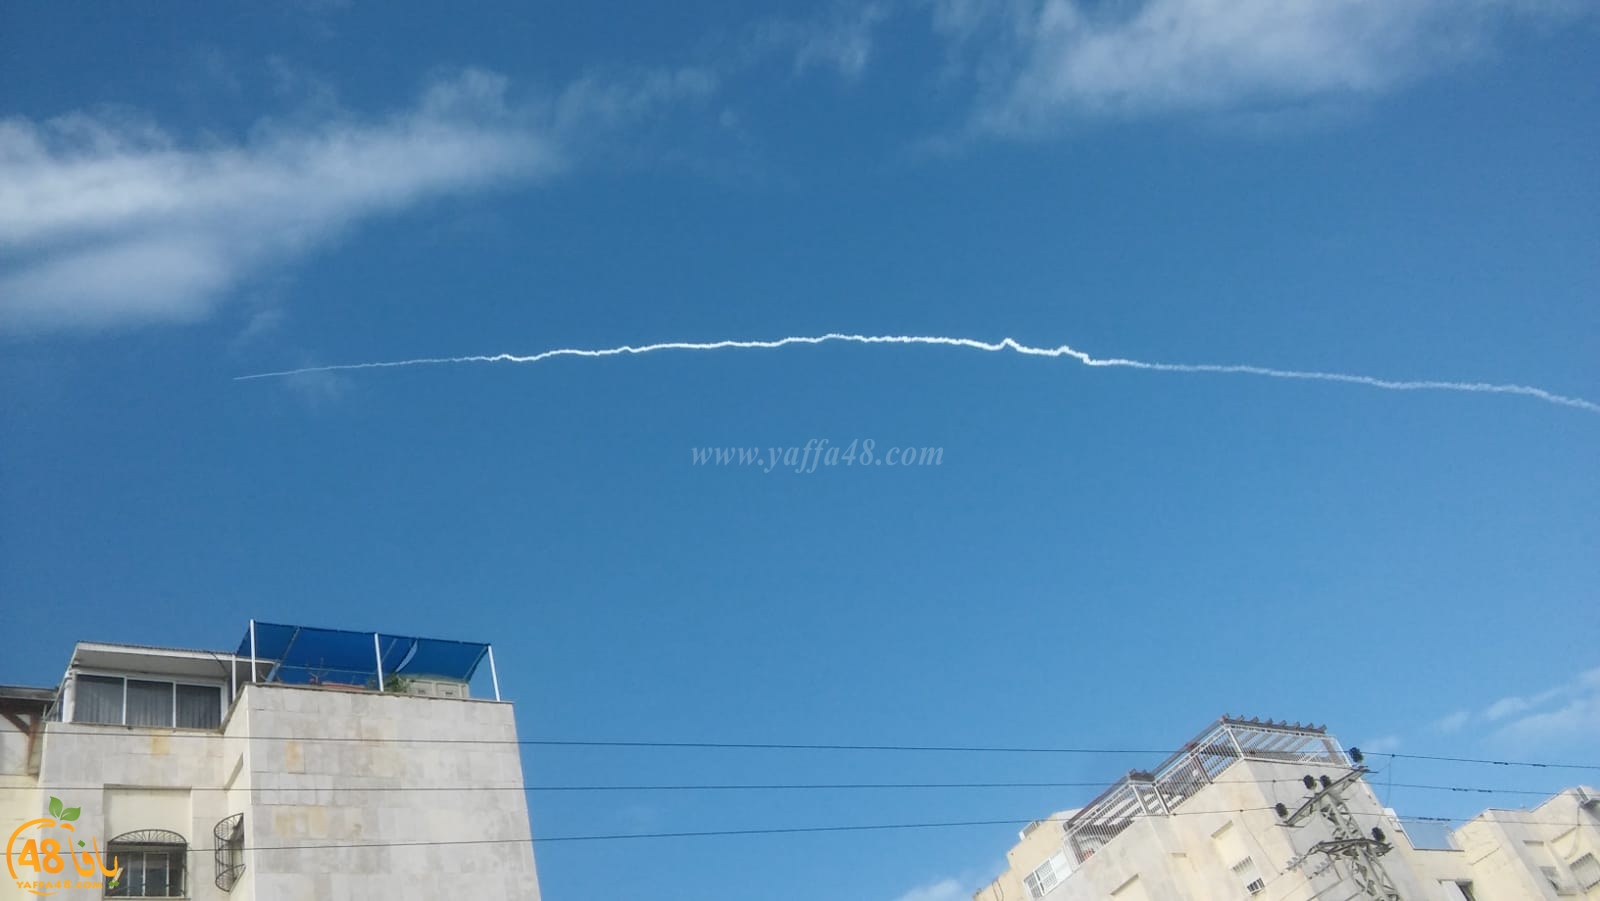  فيديو: تجربة لإطلاق صاروخ شوهدت آثاره في سماء يافا 